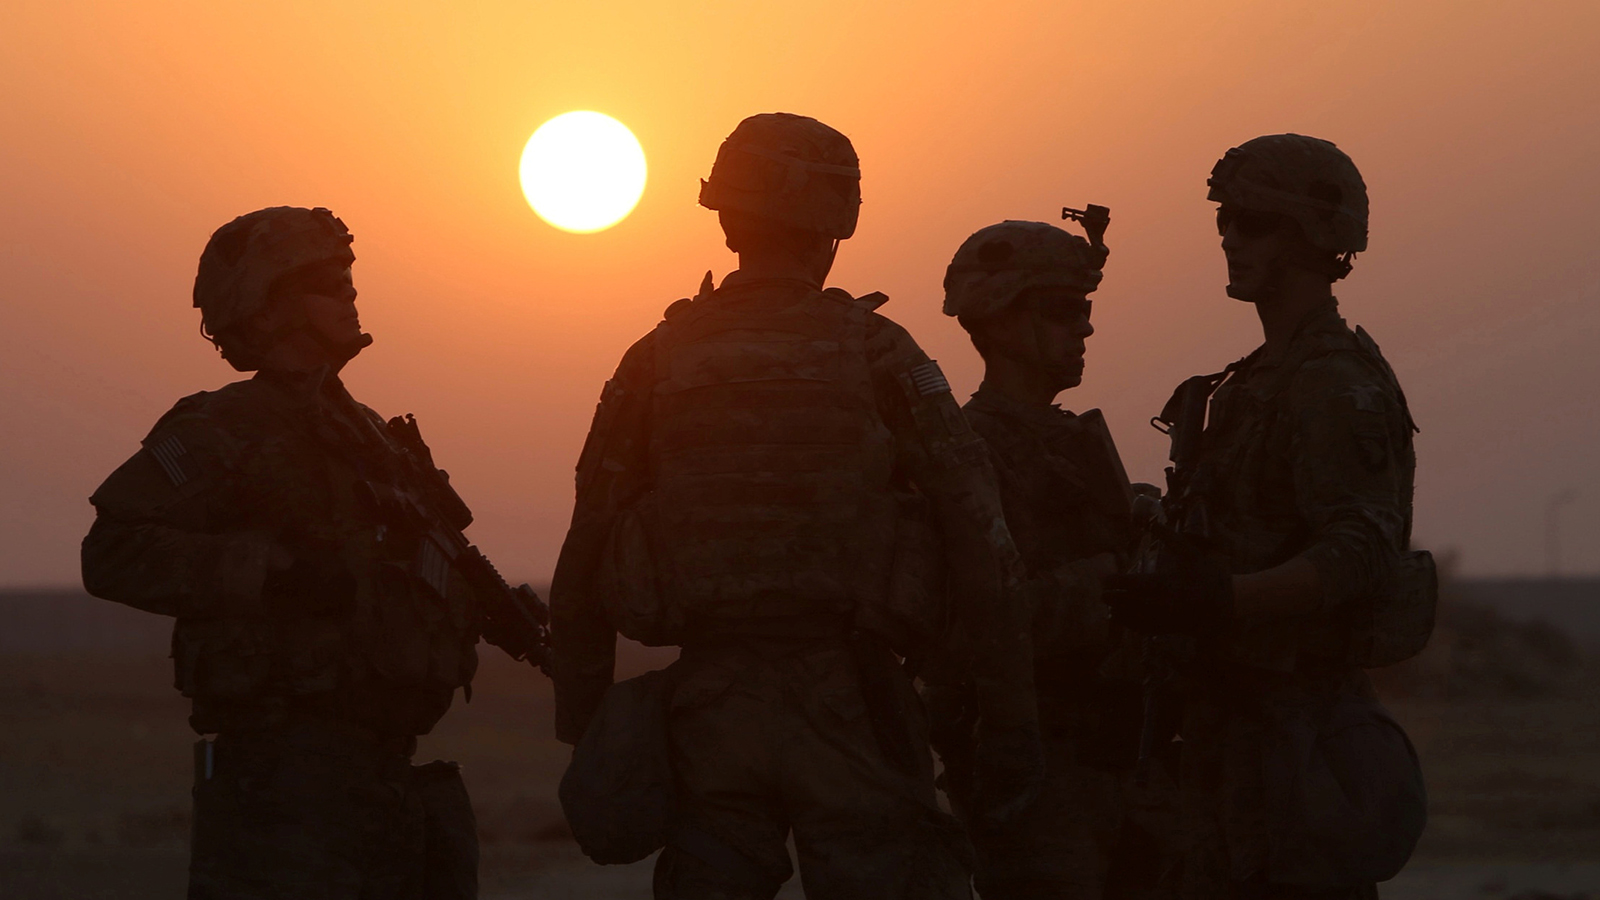 للولايات المتحدة قوات ضخمة تزيد عن 40 ألف جندي موجودين فعليًّا بقواعد ثابتة في دول الخليج، إلى جانب الأسلحة والمعدات والذخائر